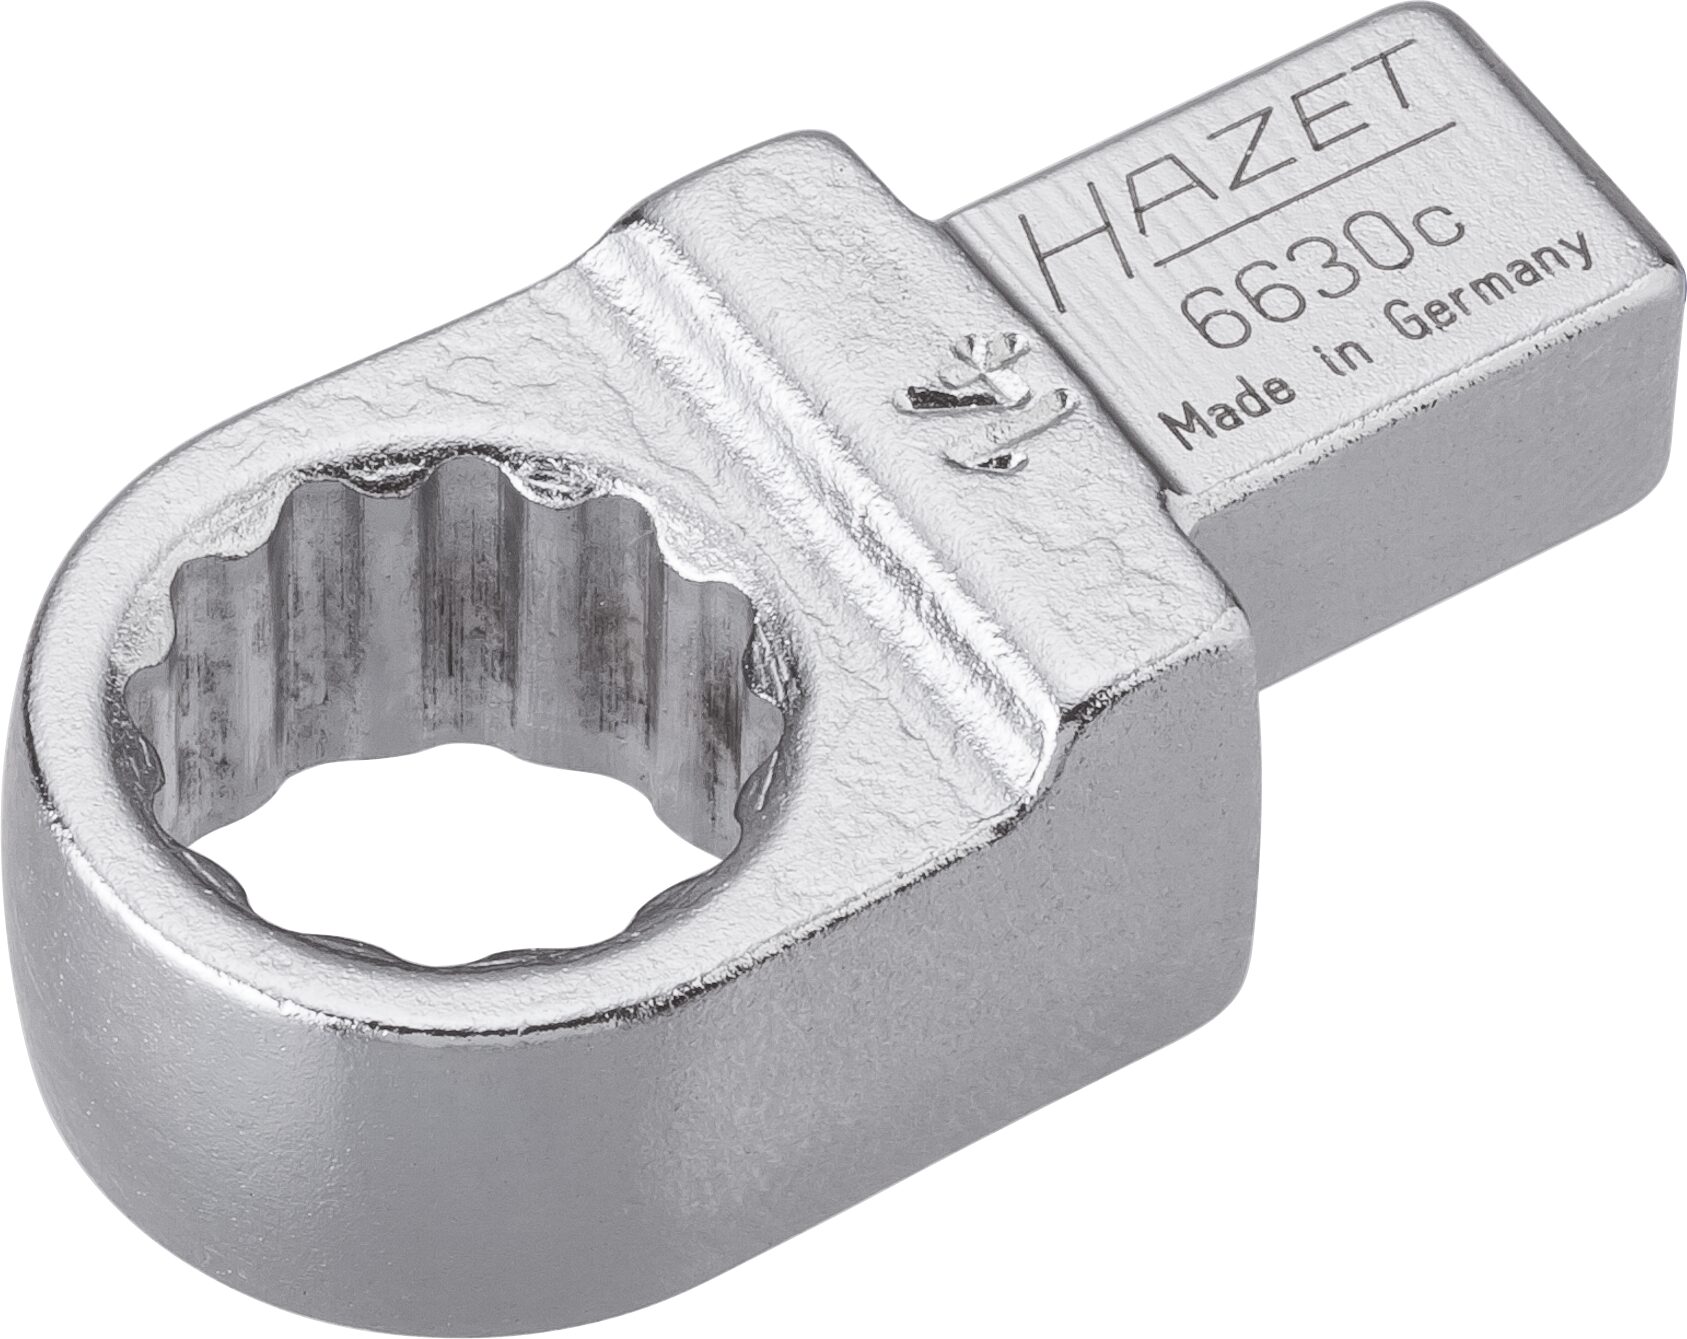 HAZET Einsteck-Ringschlüssel 6630C-14 · Einsteck-Vierkant 9 x 12 mm · Außen Doppel-Sechskant-Tractionsprofil · 14 mm